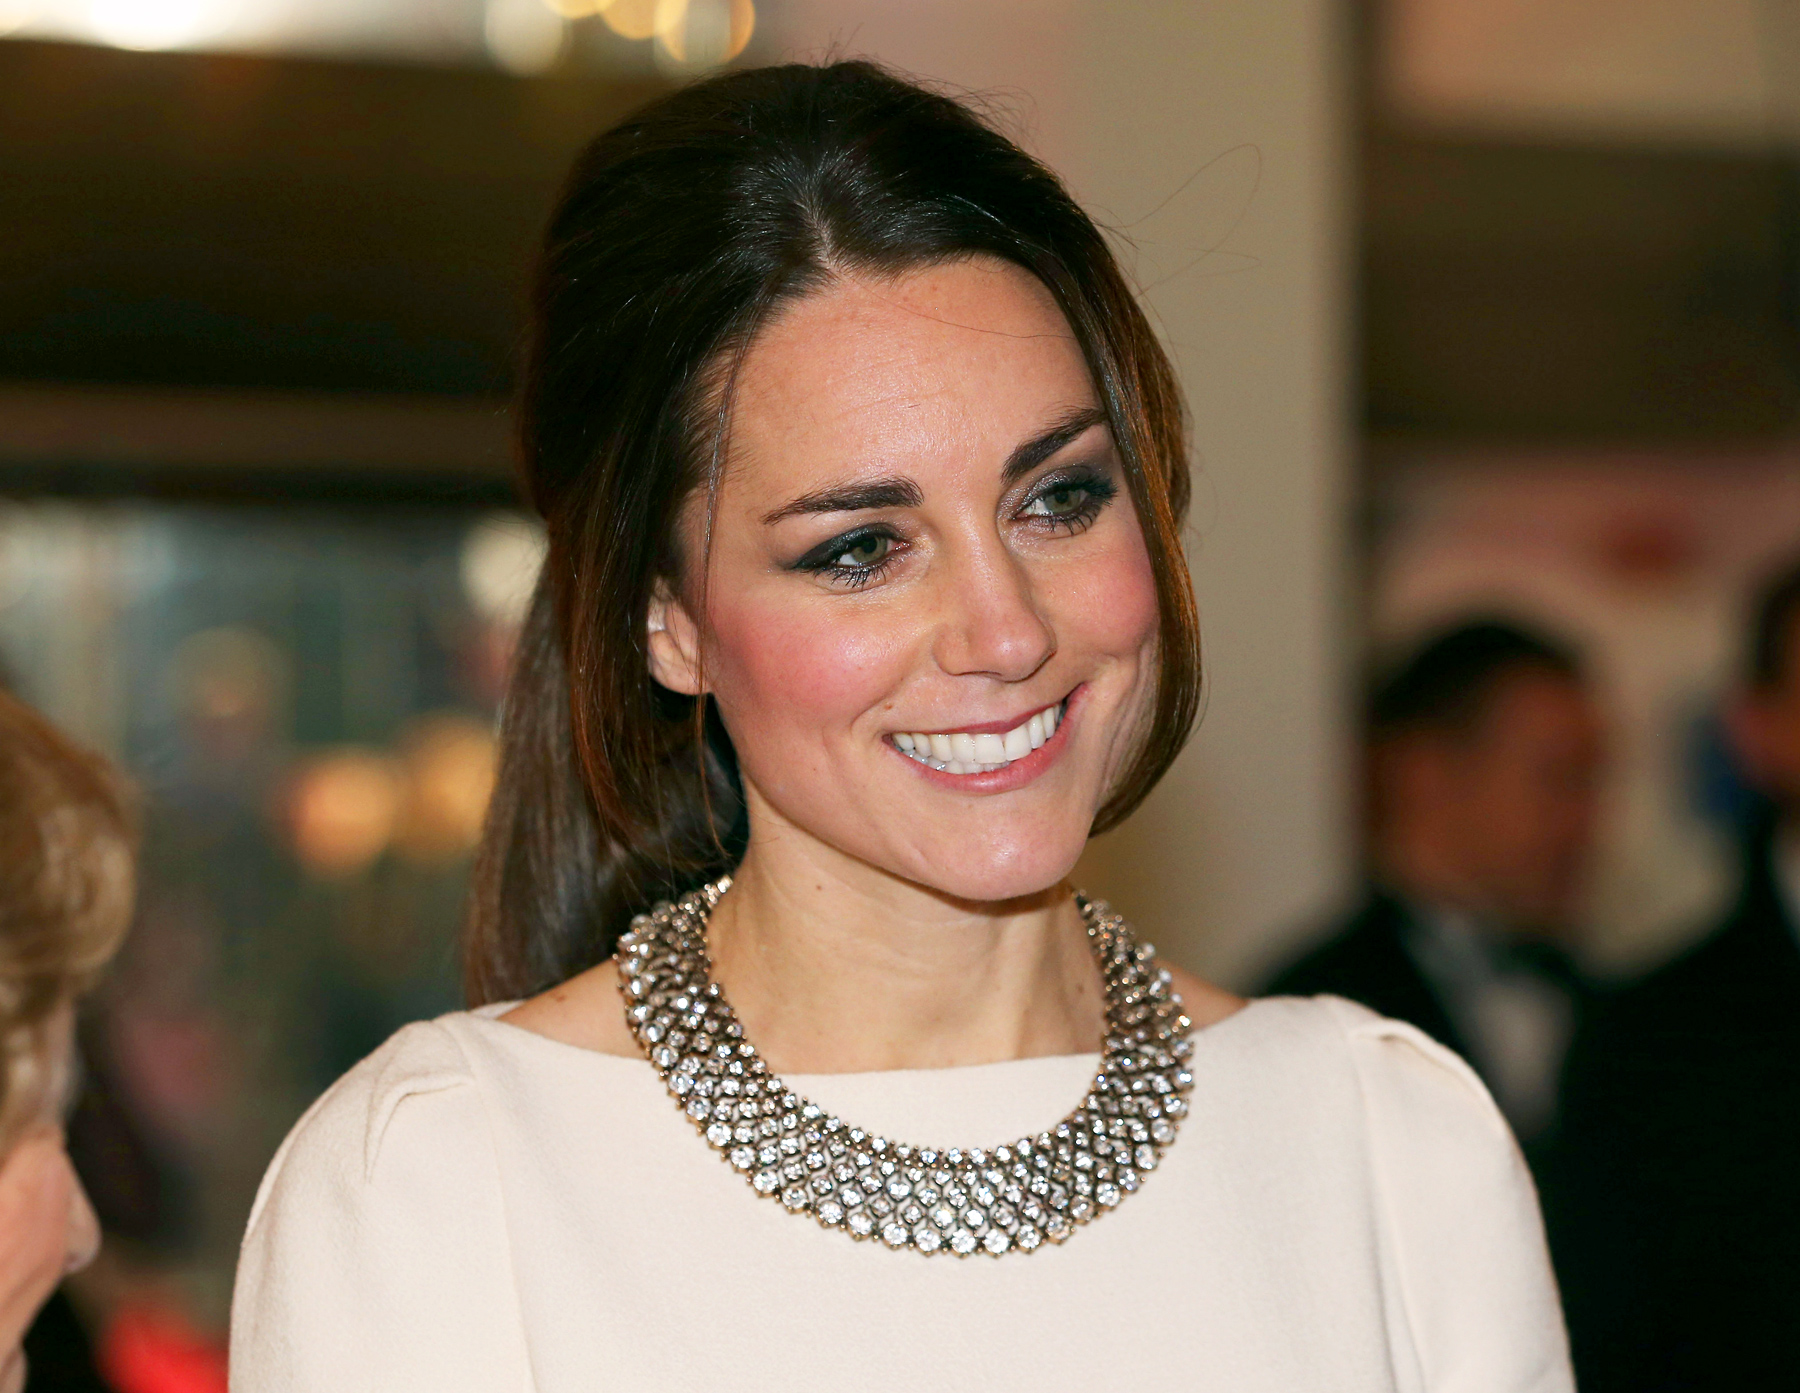 Stunning Kate Middleton